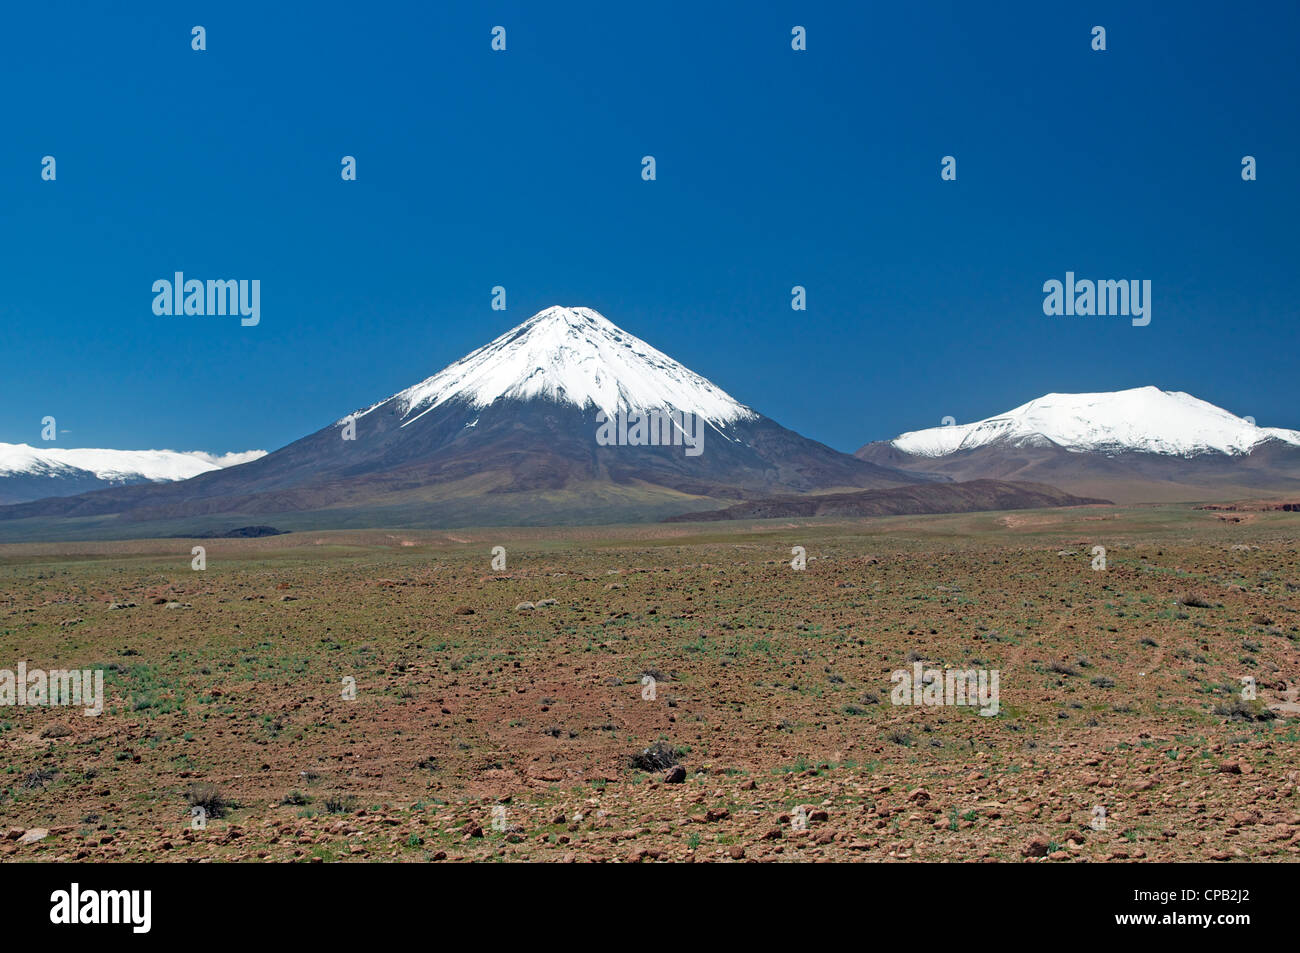 Volcan Licancabur and snowcapped mountains near San Pedro de Atacama Chile Stock Photo